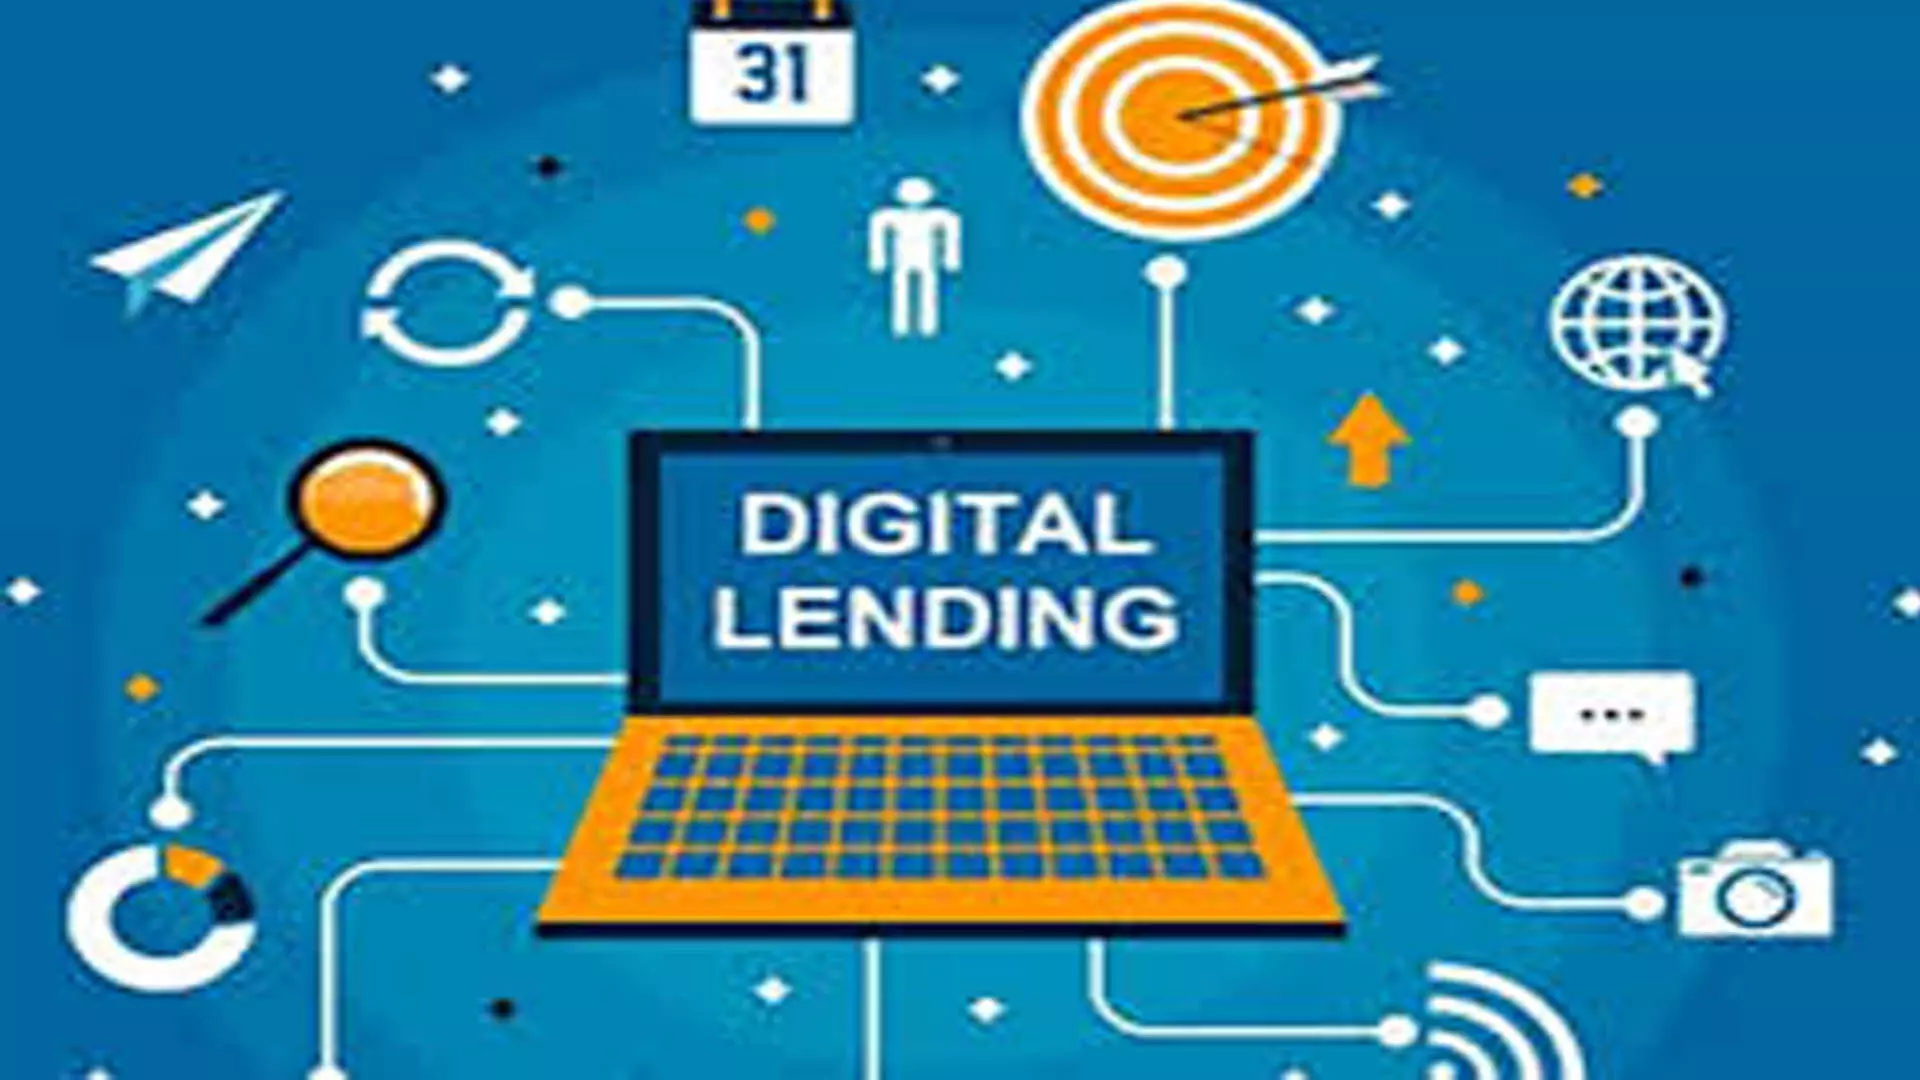 Delhi News: भारत में डिजिटल ऋण बाजार 33 प्रतिशत बढ़ा, डिजिटल लेनदेन में 44 प्रतिशत की वृद्धि